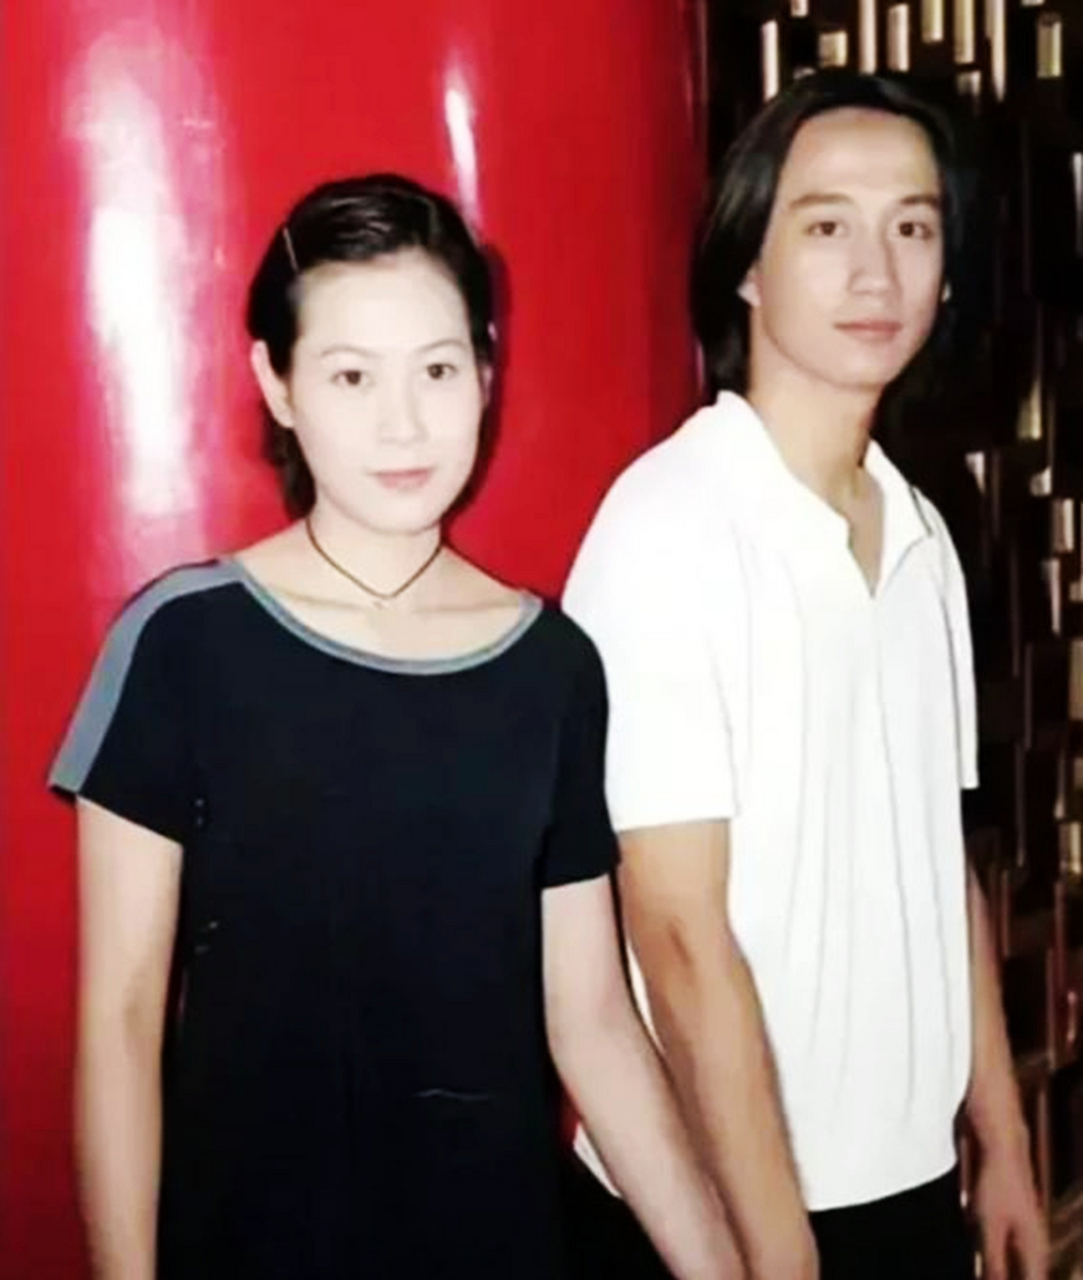 十多年前,黄磊和刘若英曾有过手牵手的合影当时,两人正热恋着